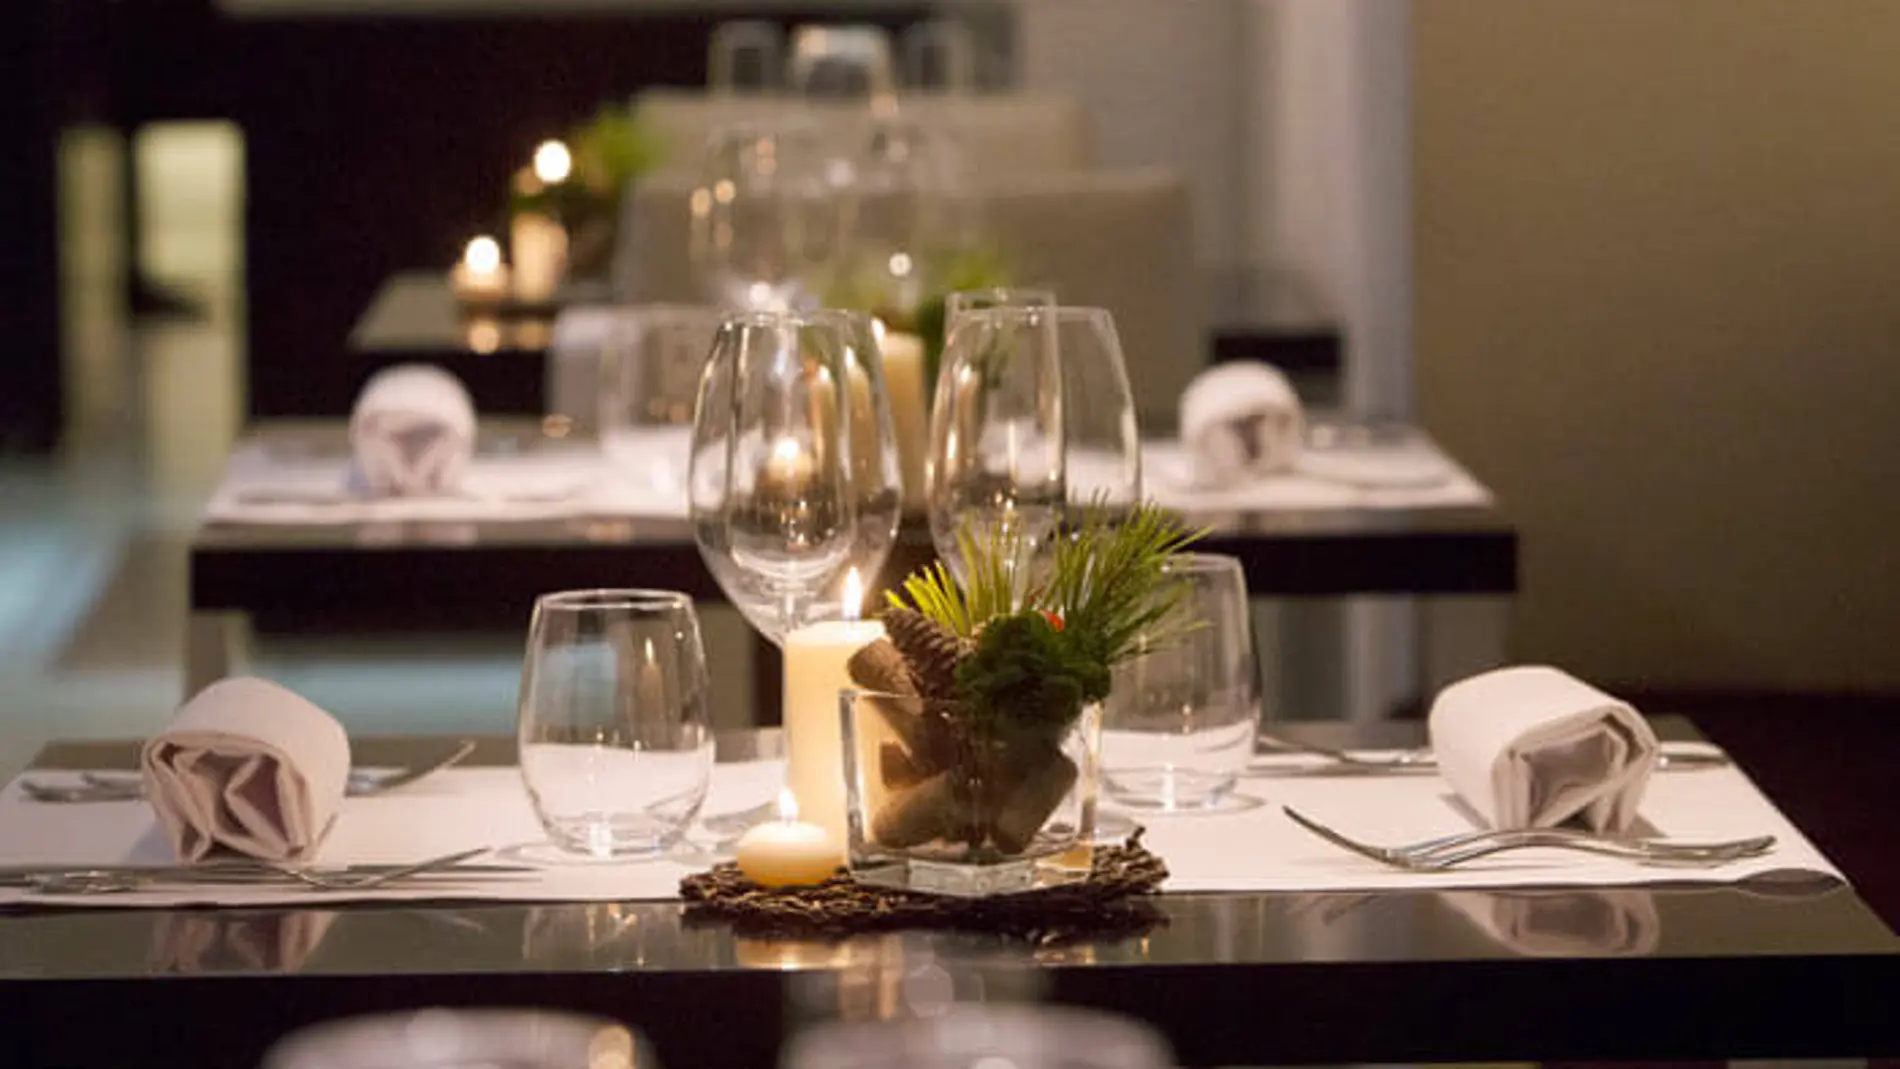 El Restaurante Ampar celebra este viernes una Cena Maridada en el marco único del palacete señorial del S. XIX donde se ubica el hotel